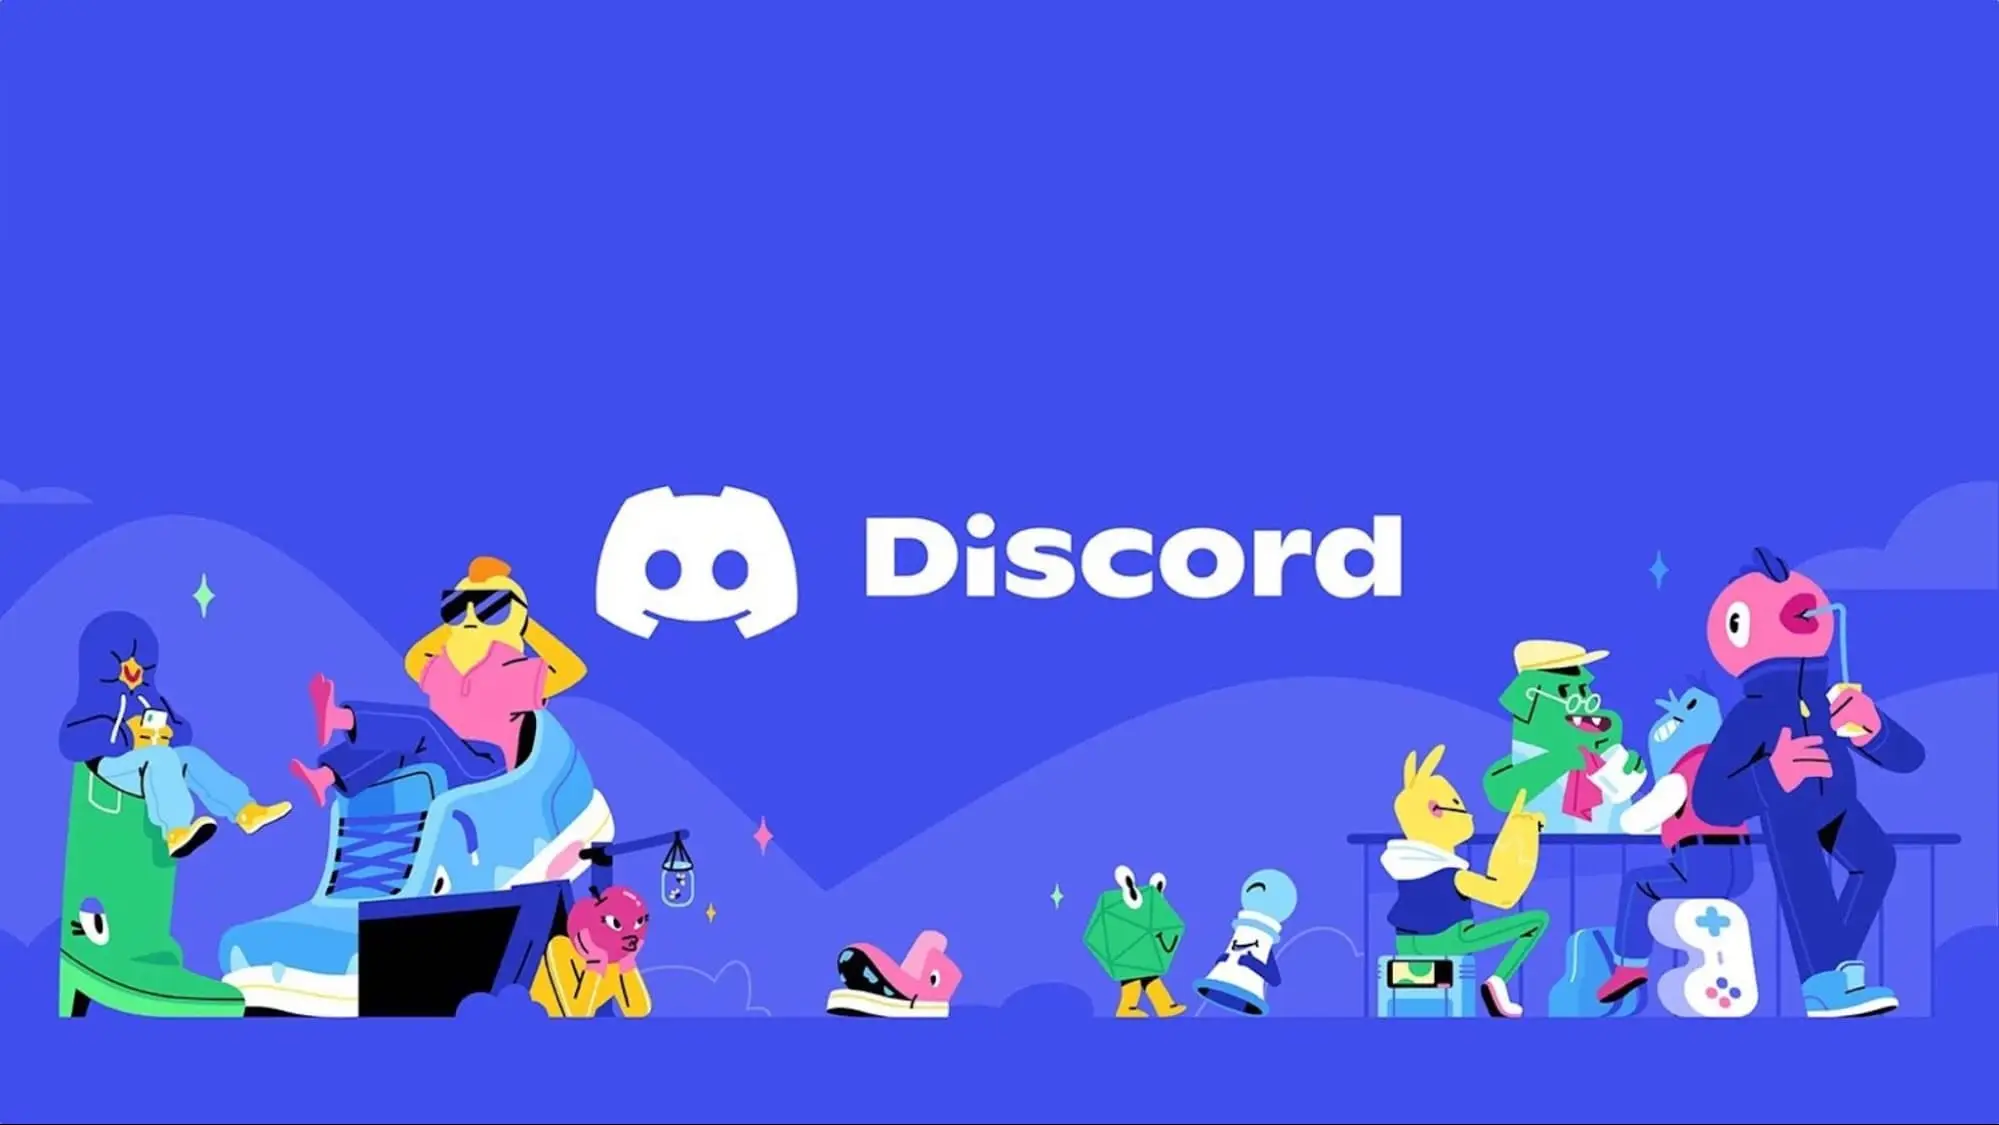 Giới thiệu về ứng dụng Discord